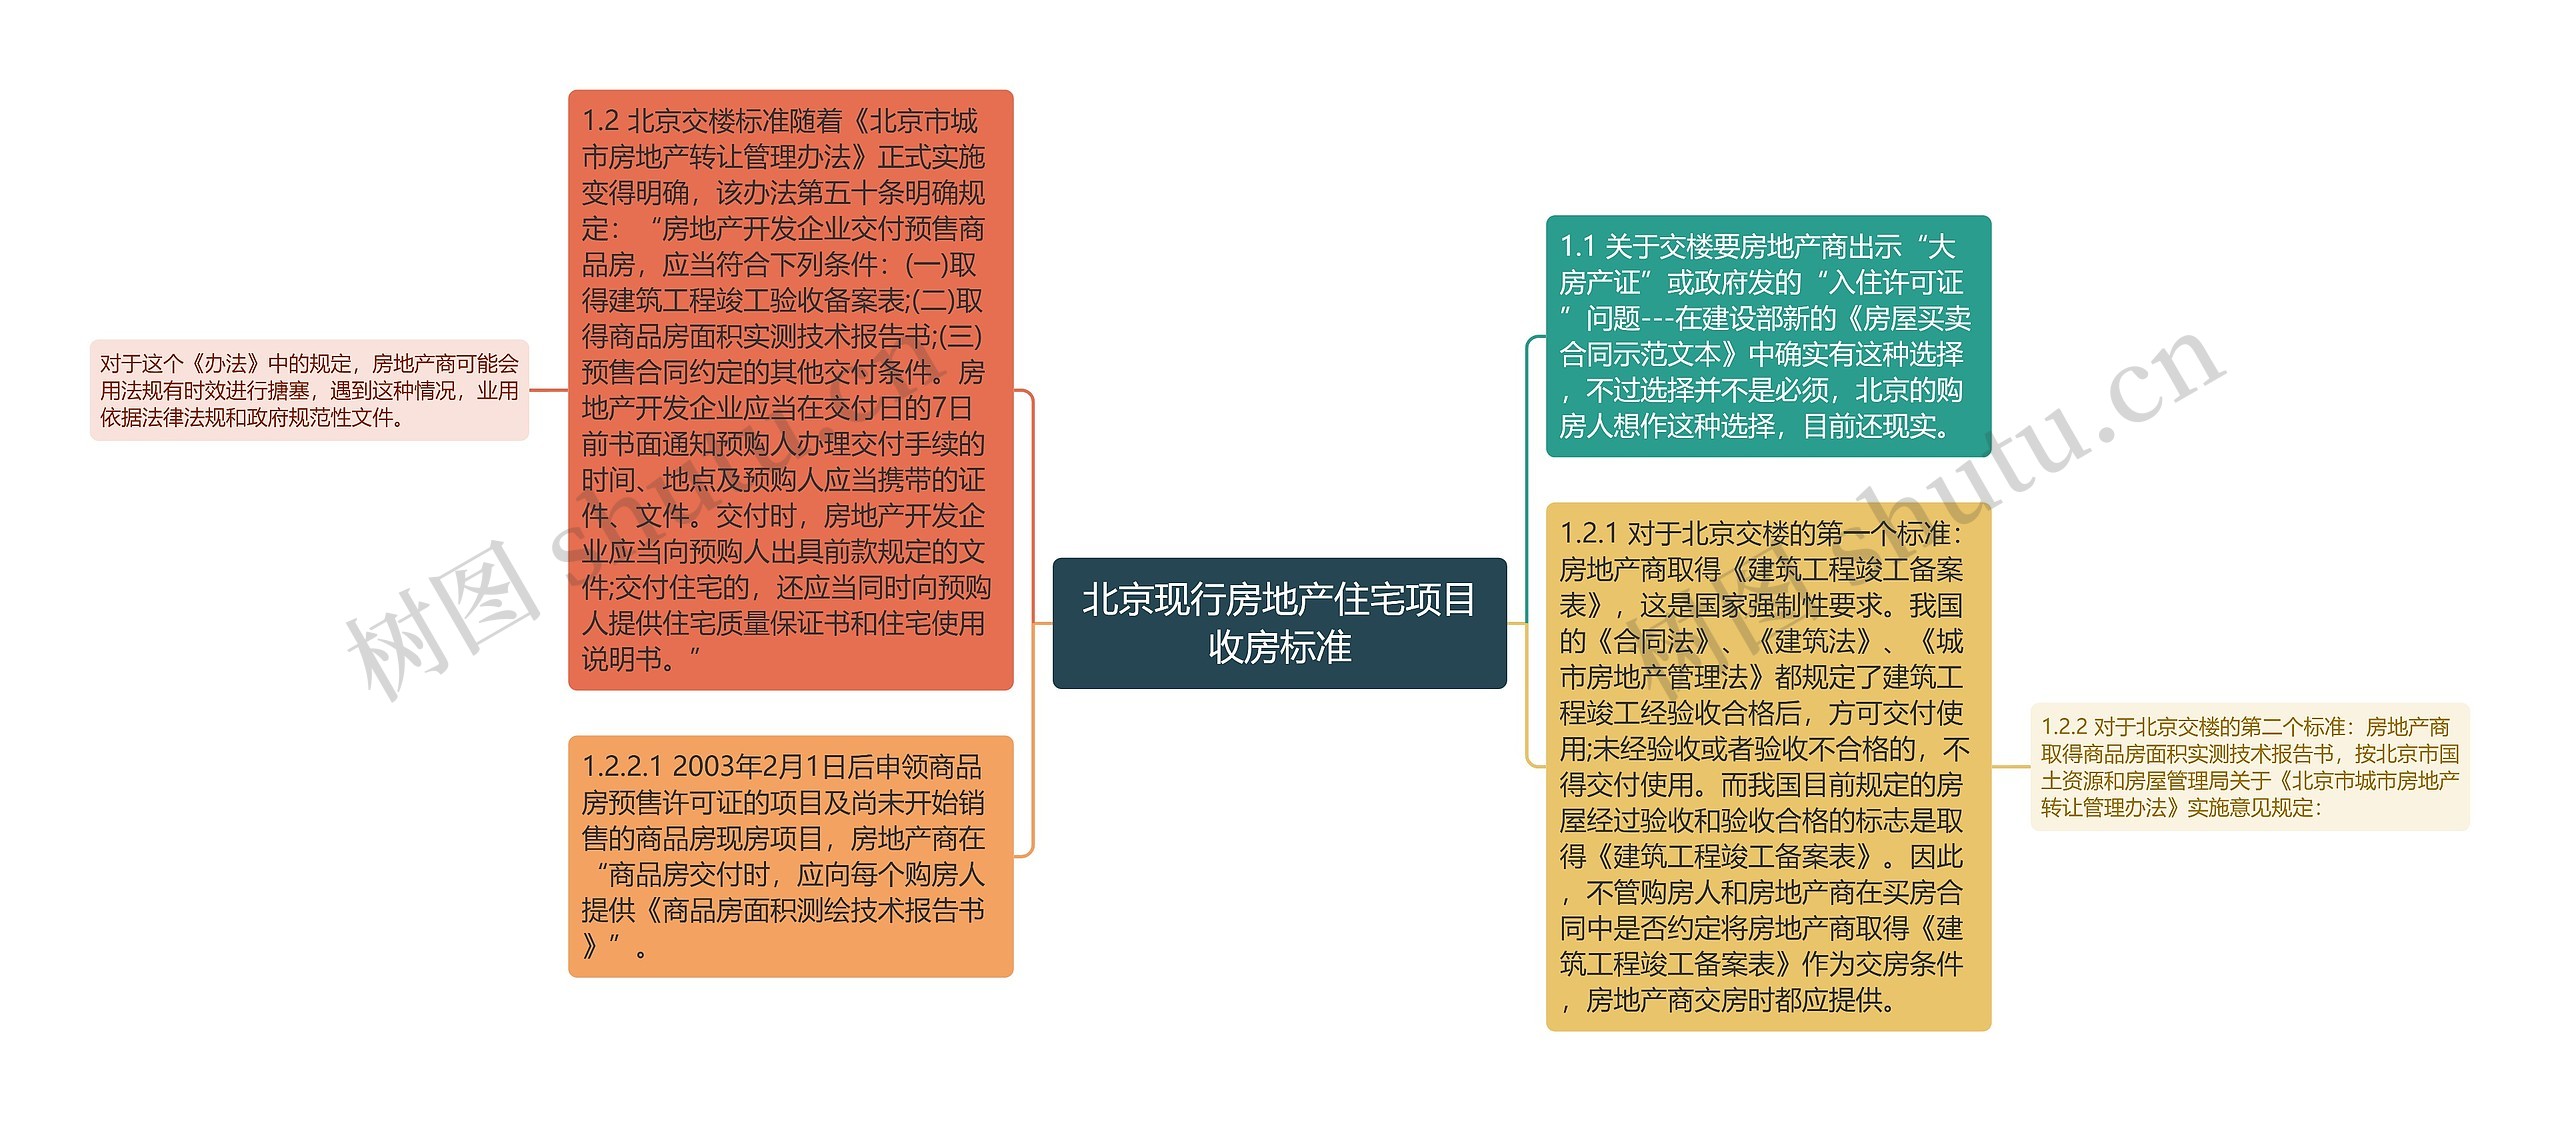 北京现行房地产住宅项目收房标准思维导图